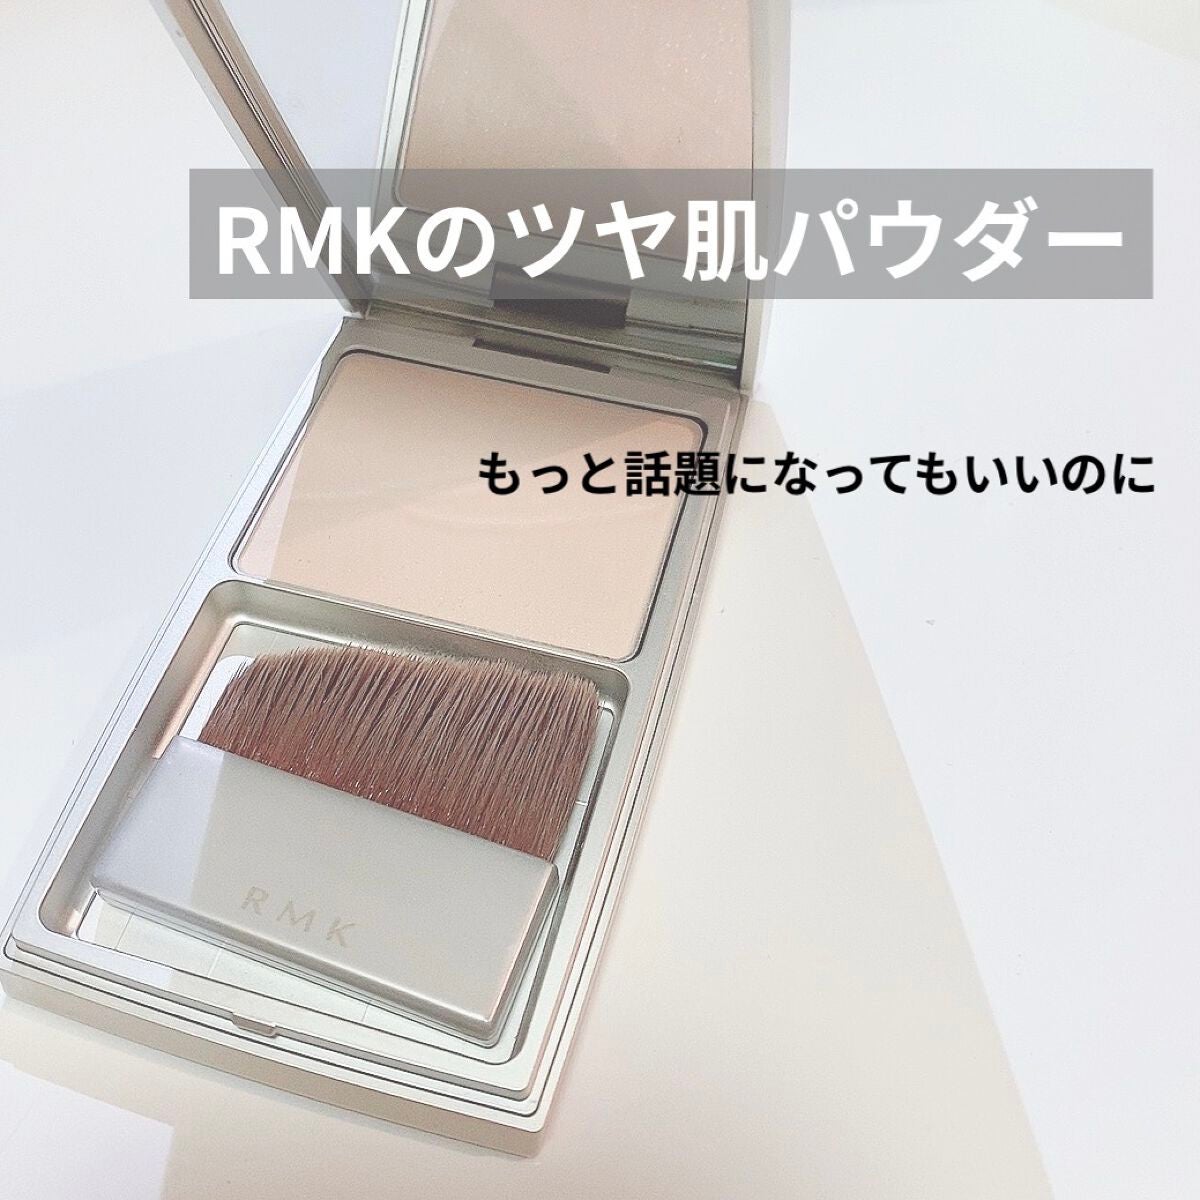 【新品】RMK シルクフィット フェイスパウダー #P01 ブラシ付き